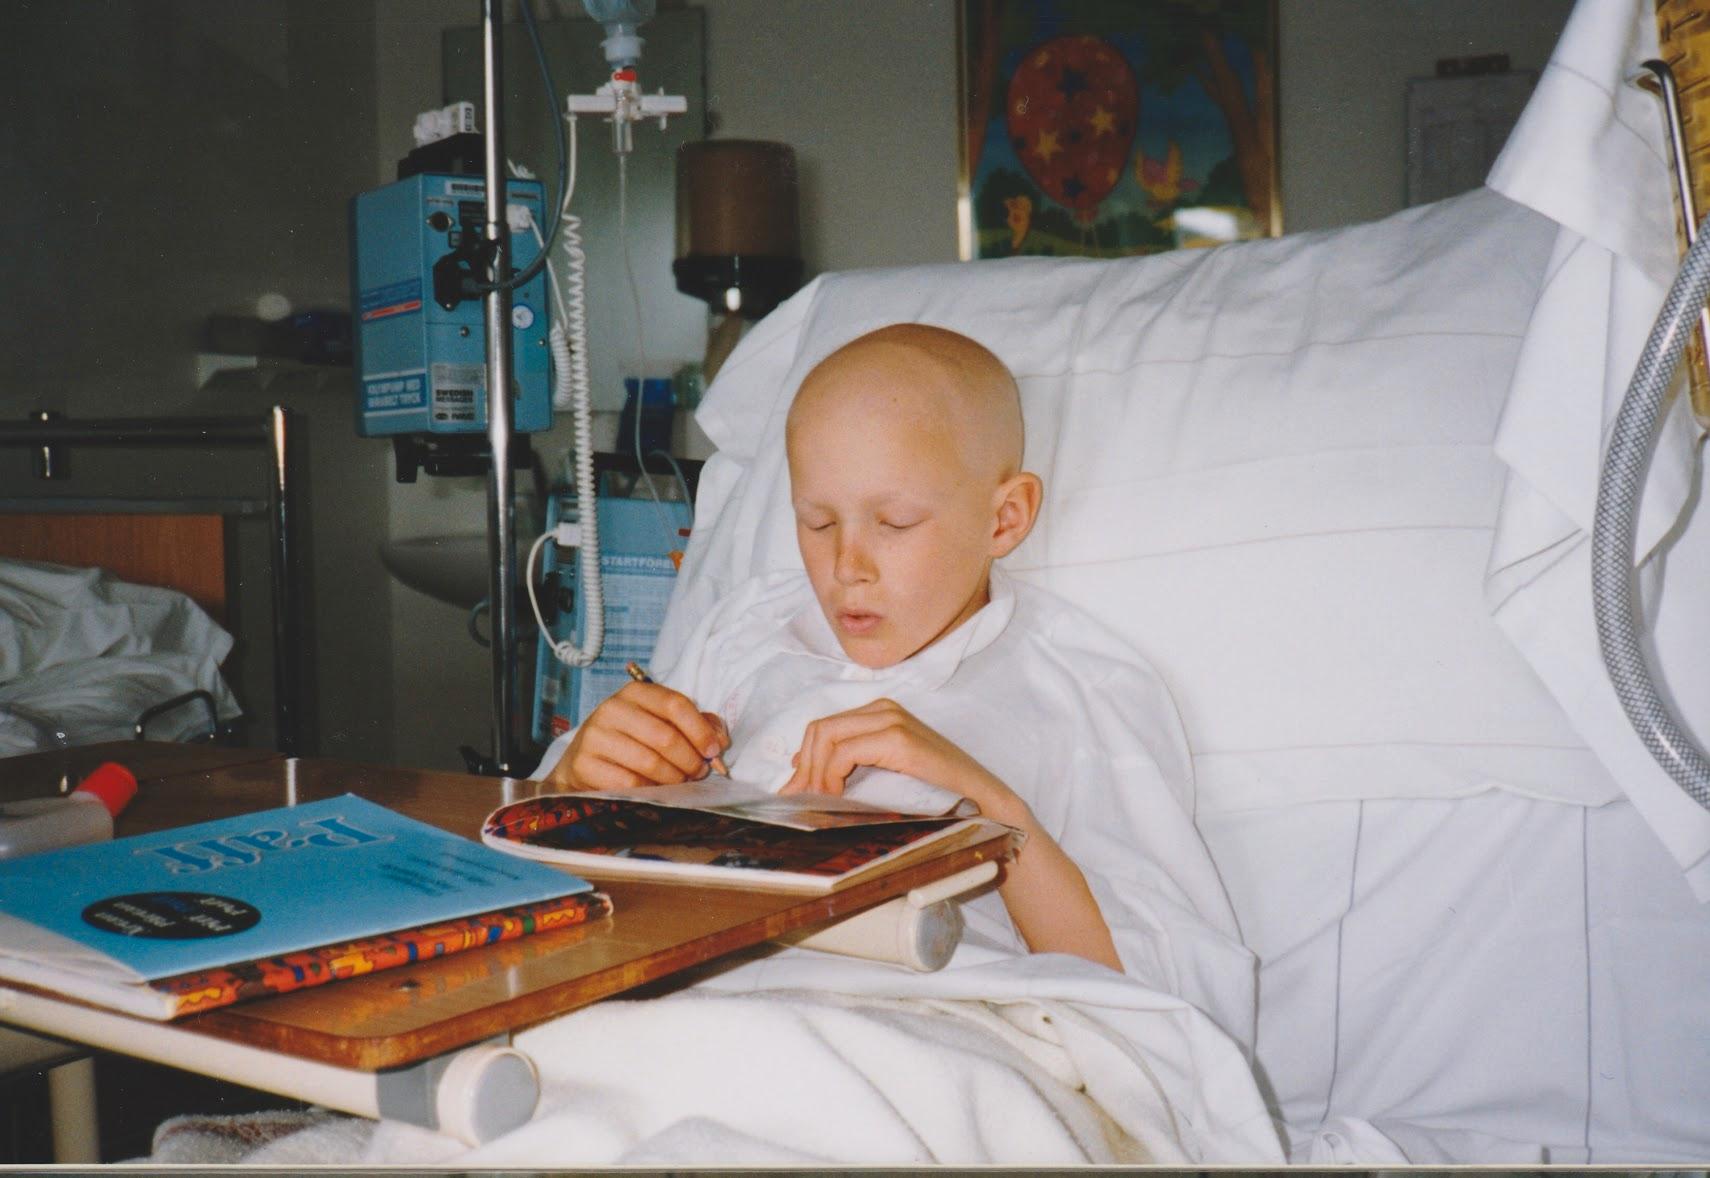 När han var barn fick han cancer och blev av det rullstolsburen som nioåring.